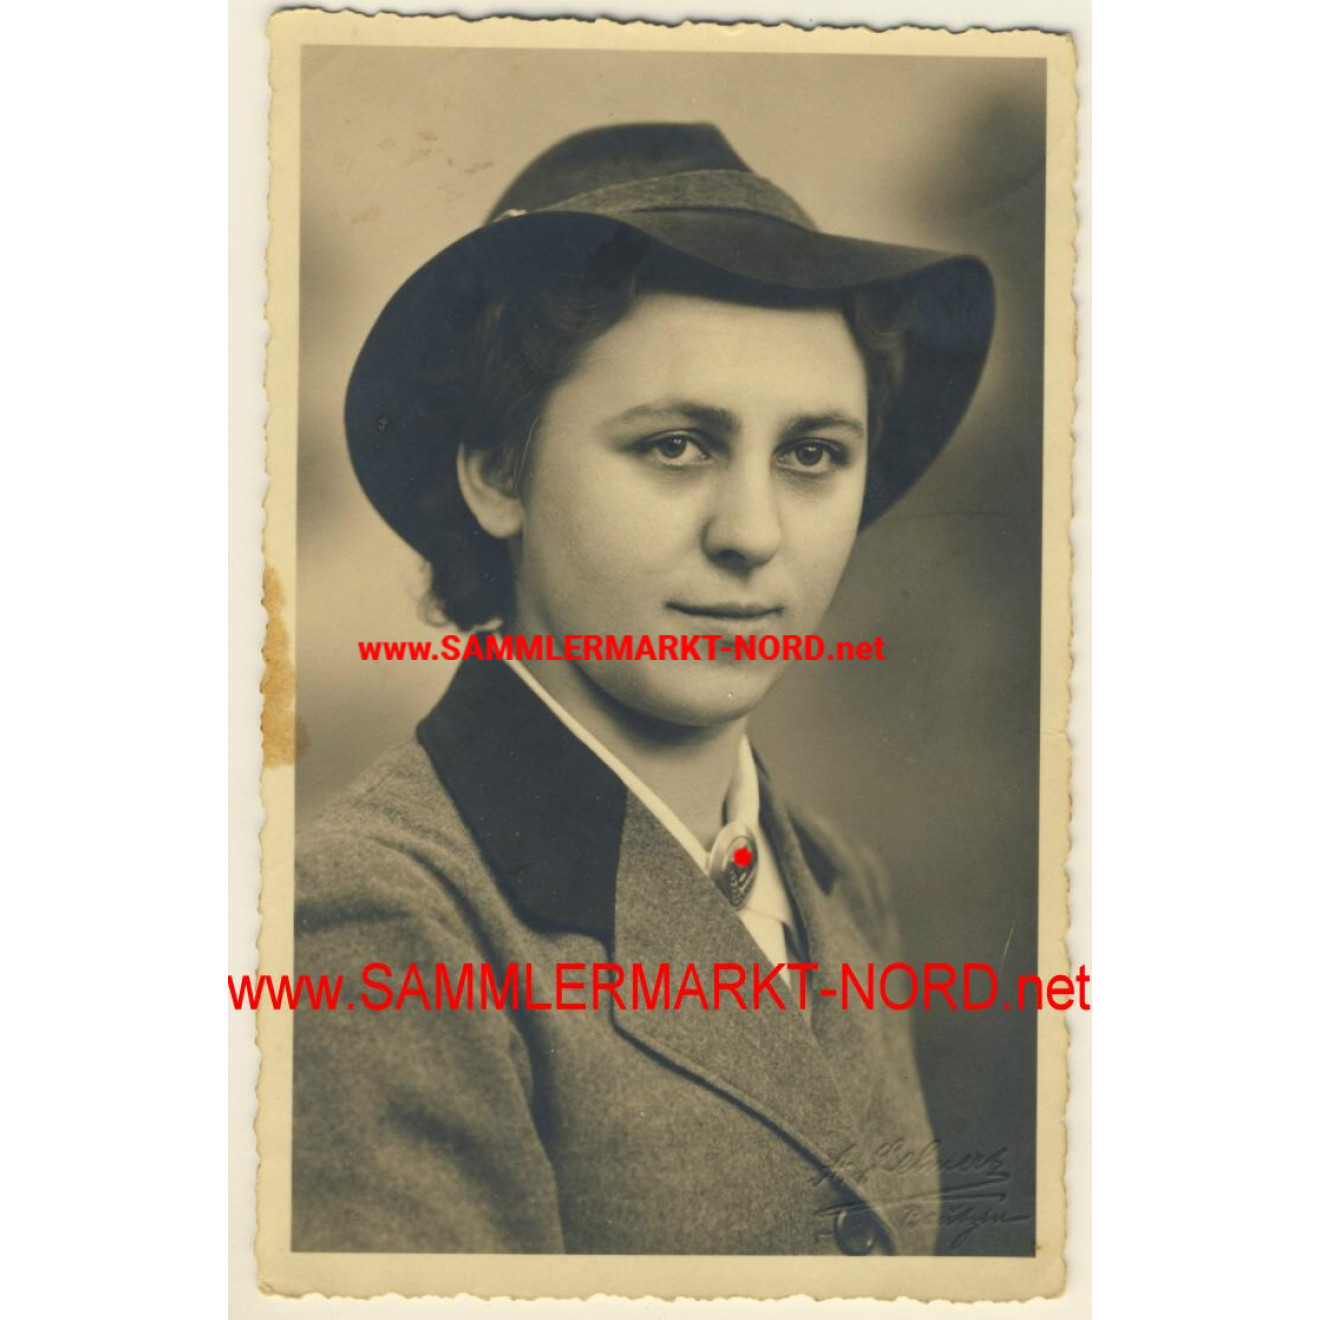 Führerin des weiblichen Reichsarbeitsdienst (RADwj)